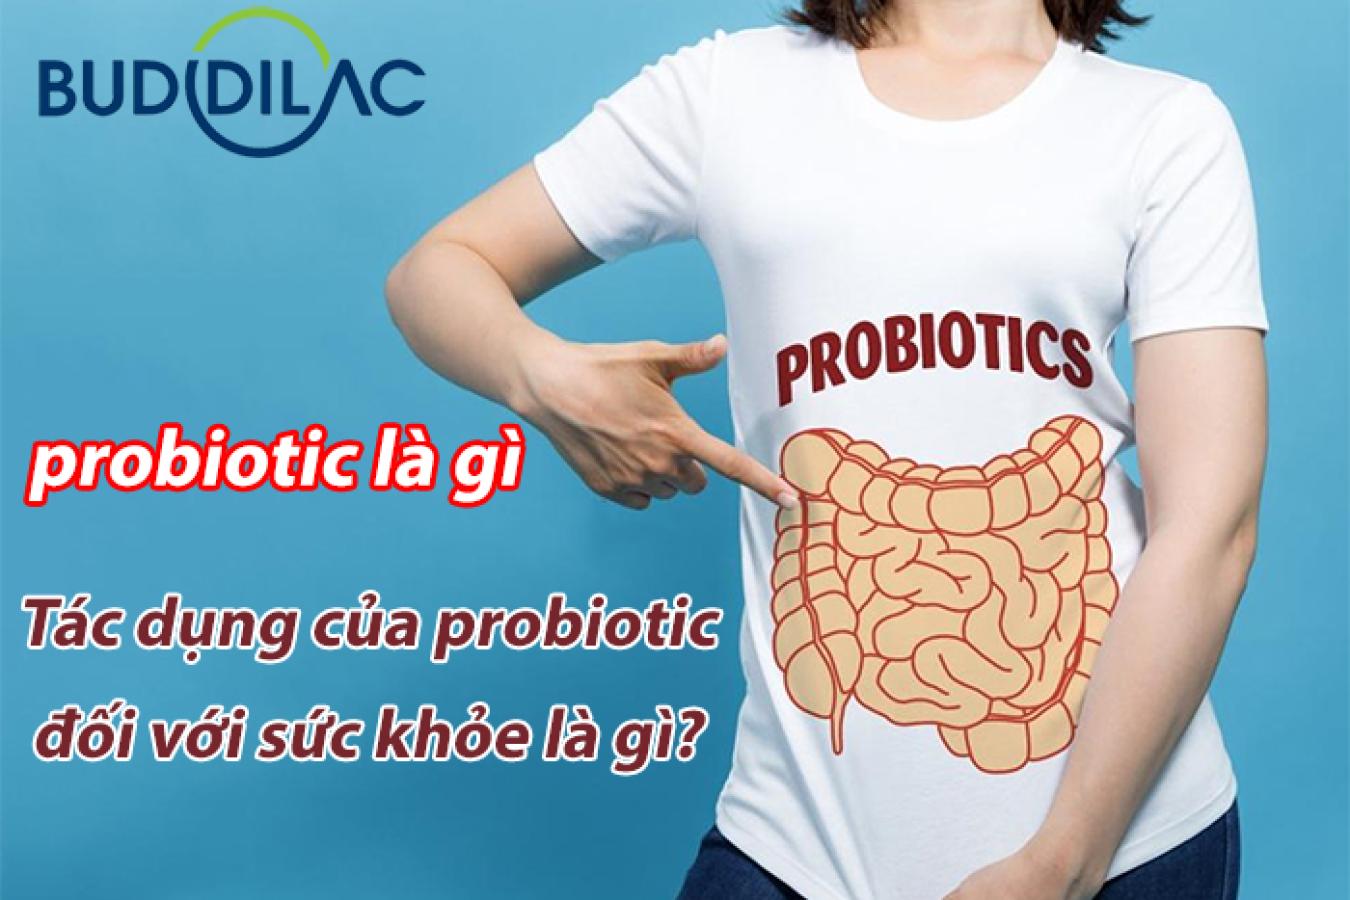 Lợi khuẩn probiotic có tác dụng gì đối với sức khỏe